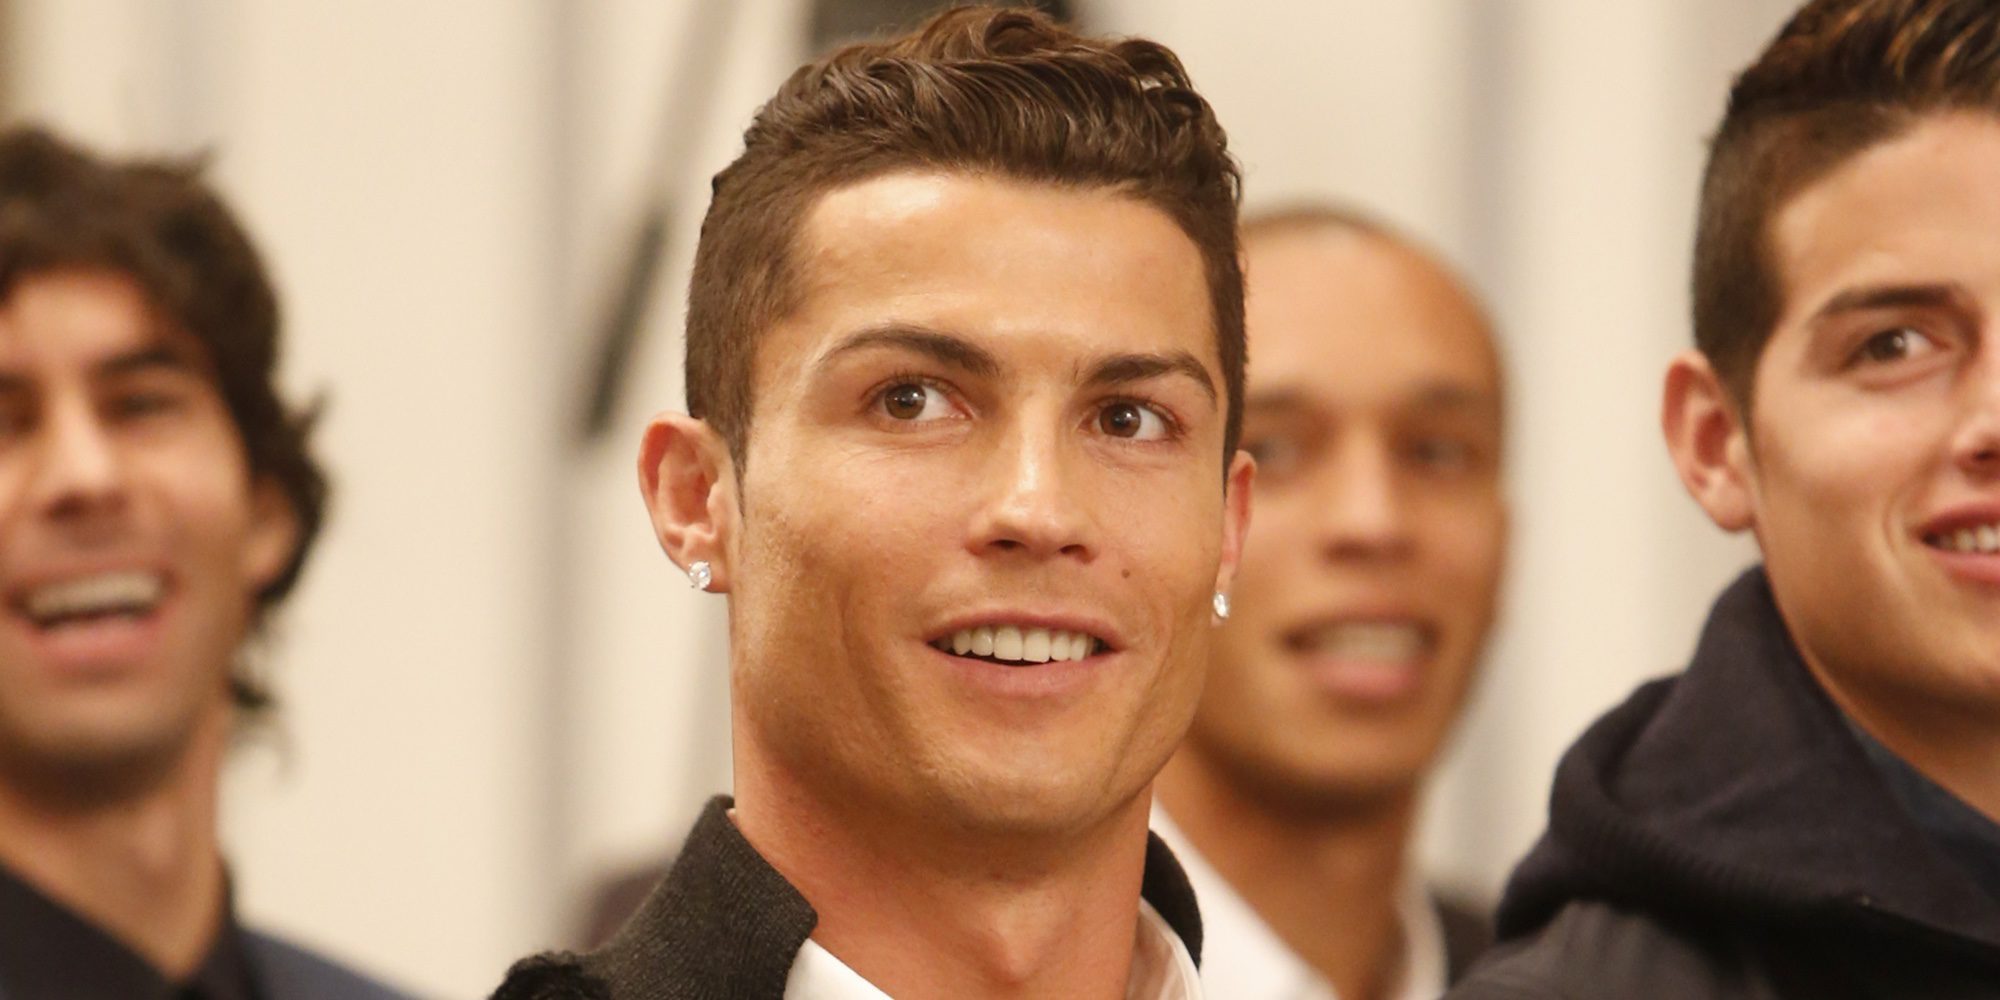 Cristiano Ronaldo confirma su paternidad: "Estoy contento de poder, por fin, estar con mis hijos por primera vez"